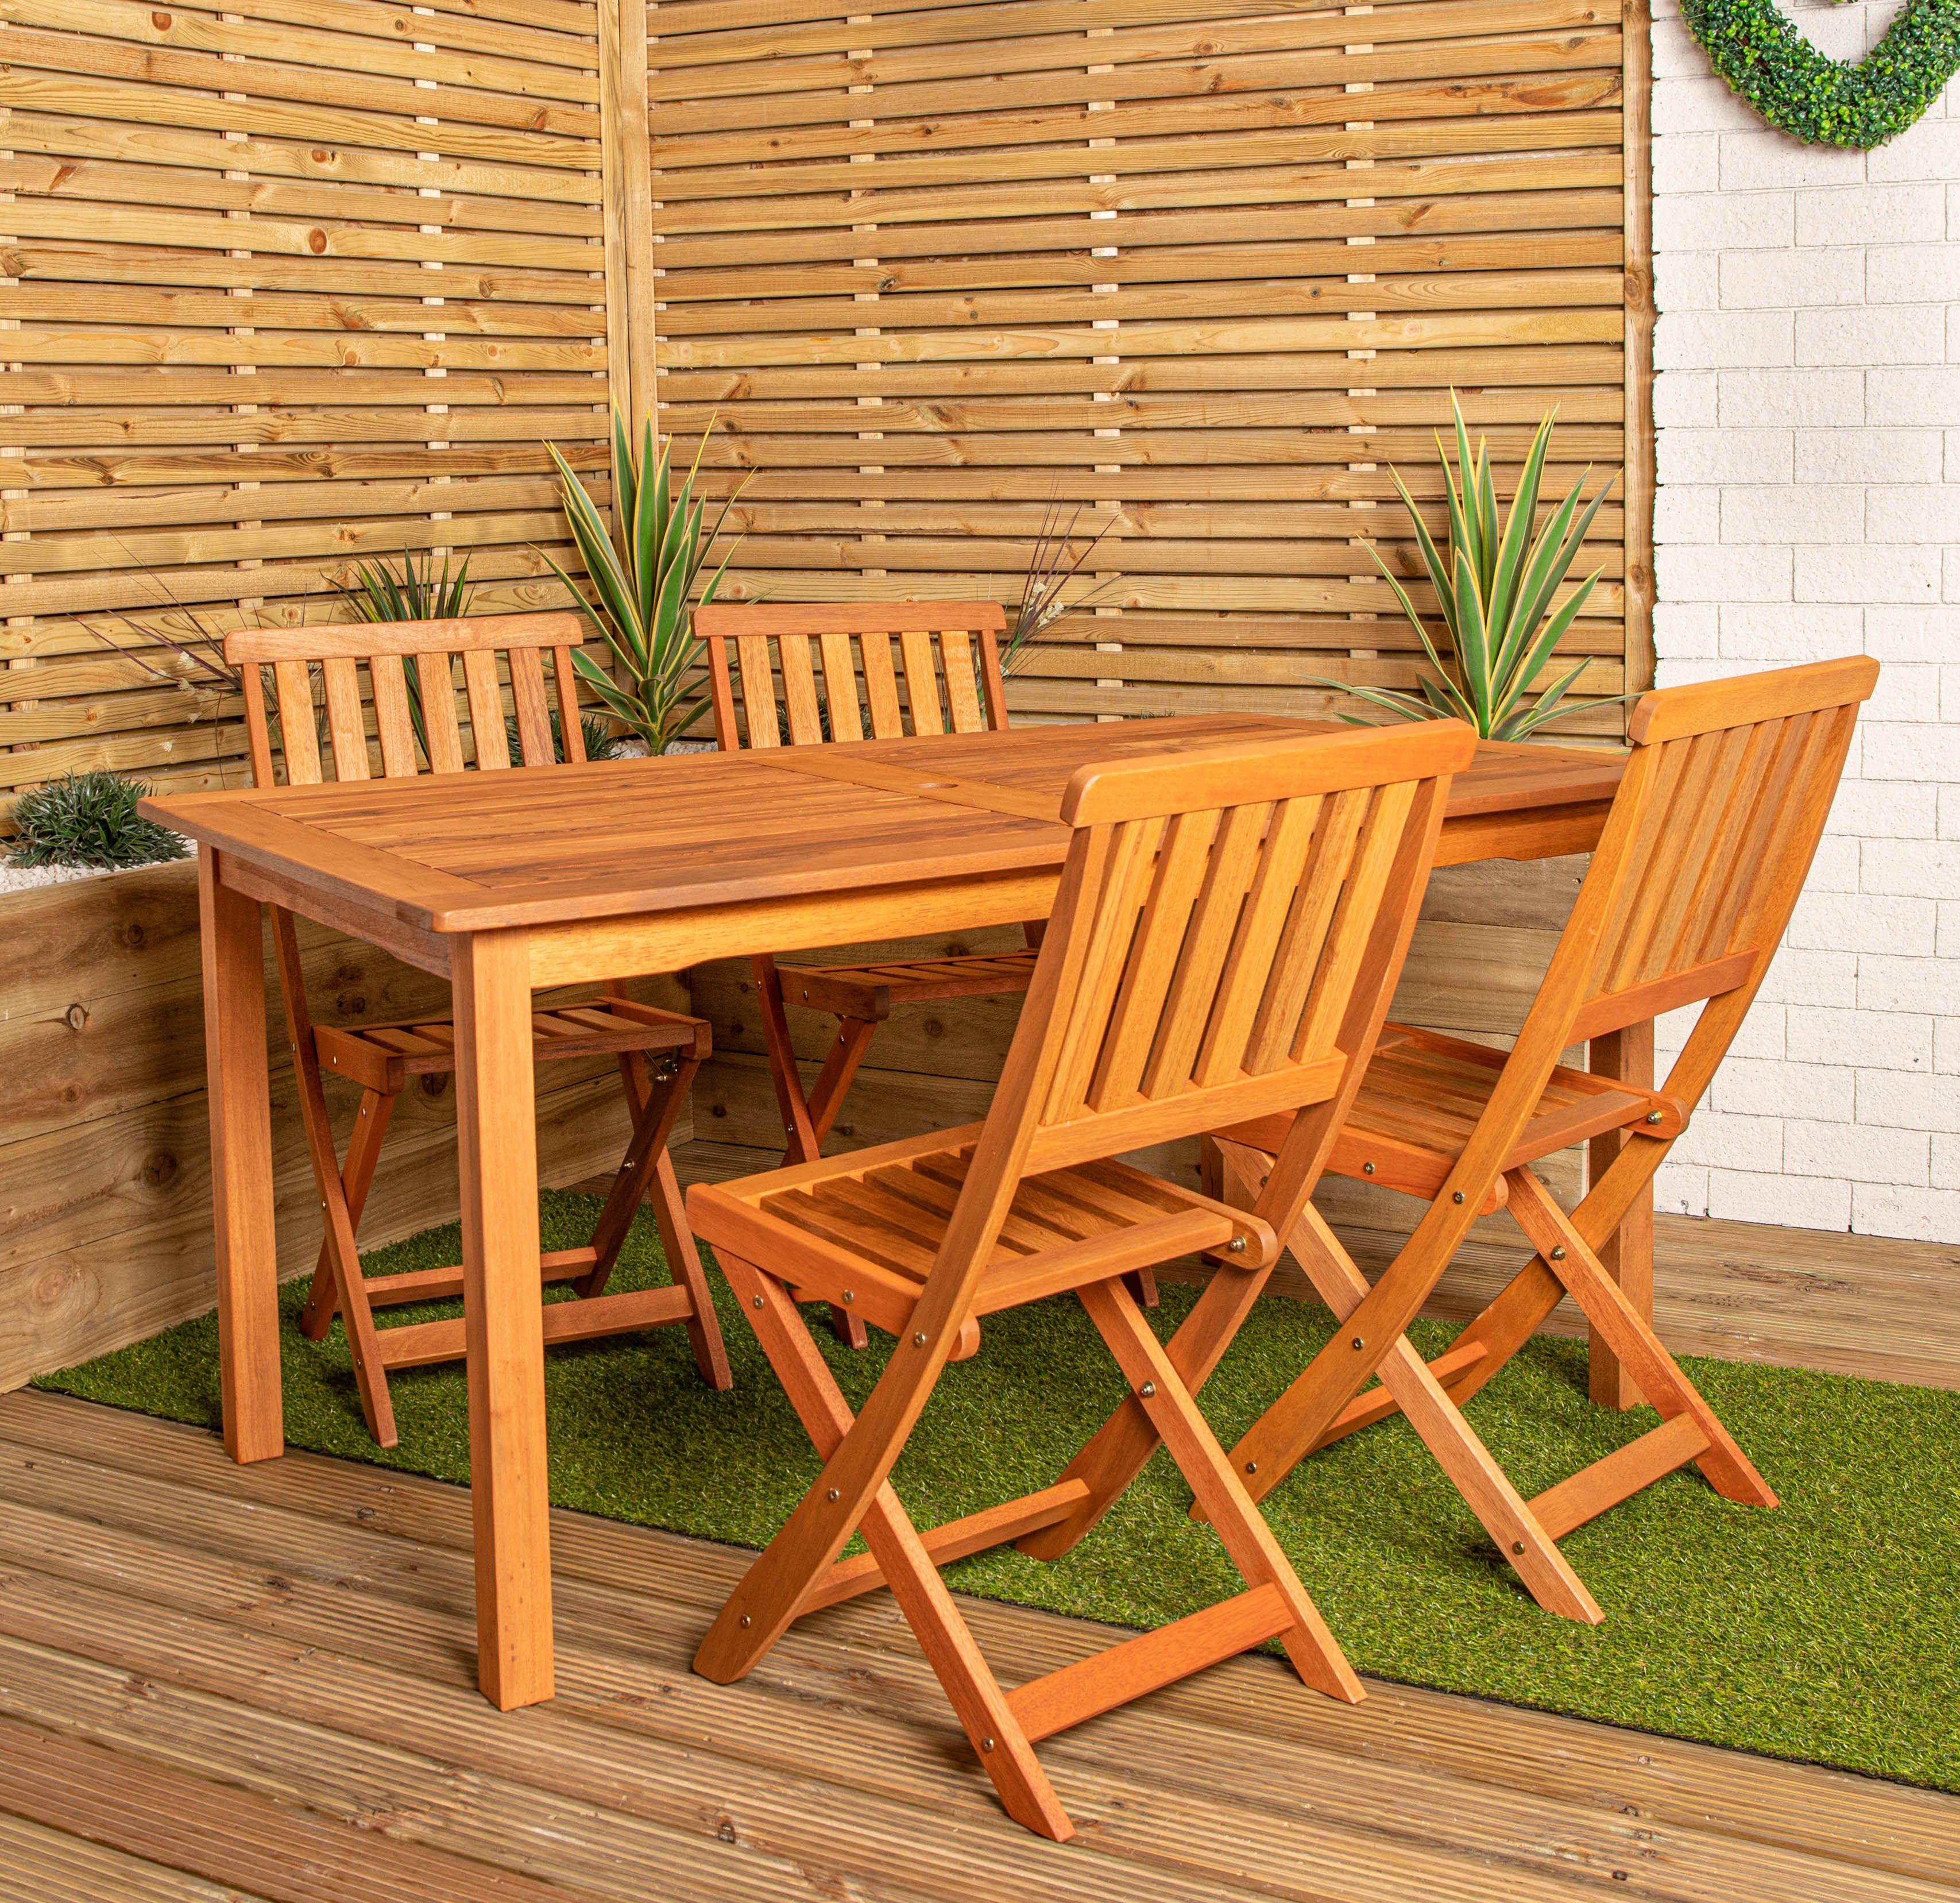 Photos - Garden Furniture Outdoor 4 Person Rectangular Wooden Garden Patio Dining Table Chairs Set